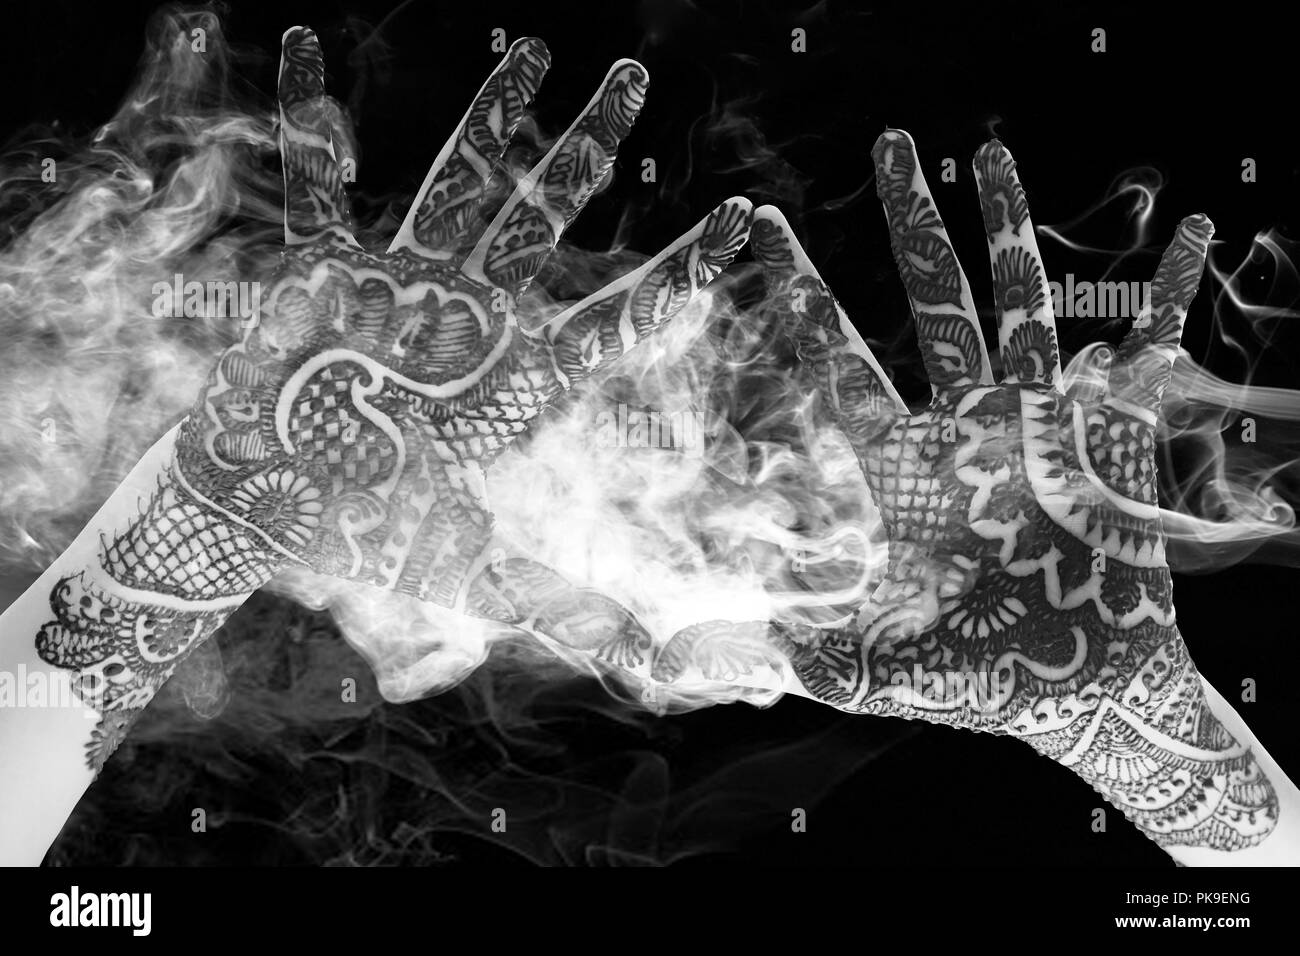 Le noir et blanc des mains ensemble pour montrer le beau tatouage au henné à l'ouvrir les mains et les bras avec de la fumée et de la lumière Banque D'Images